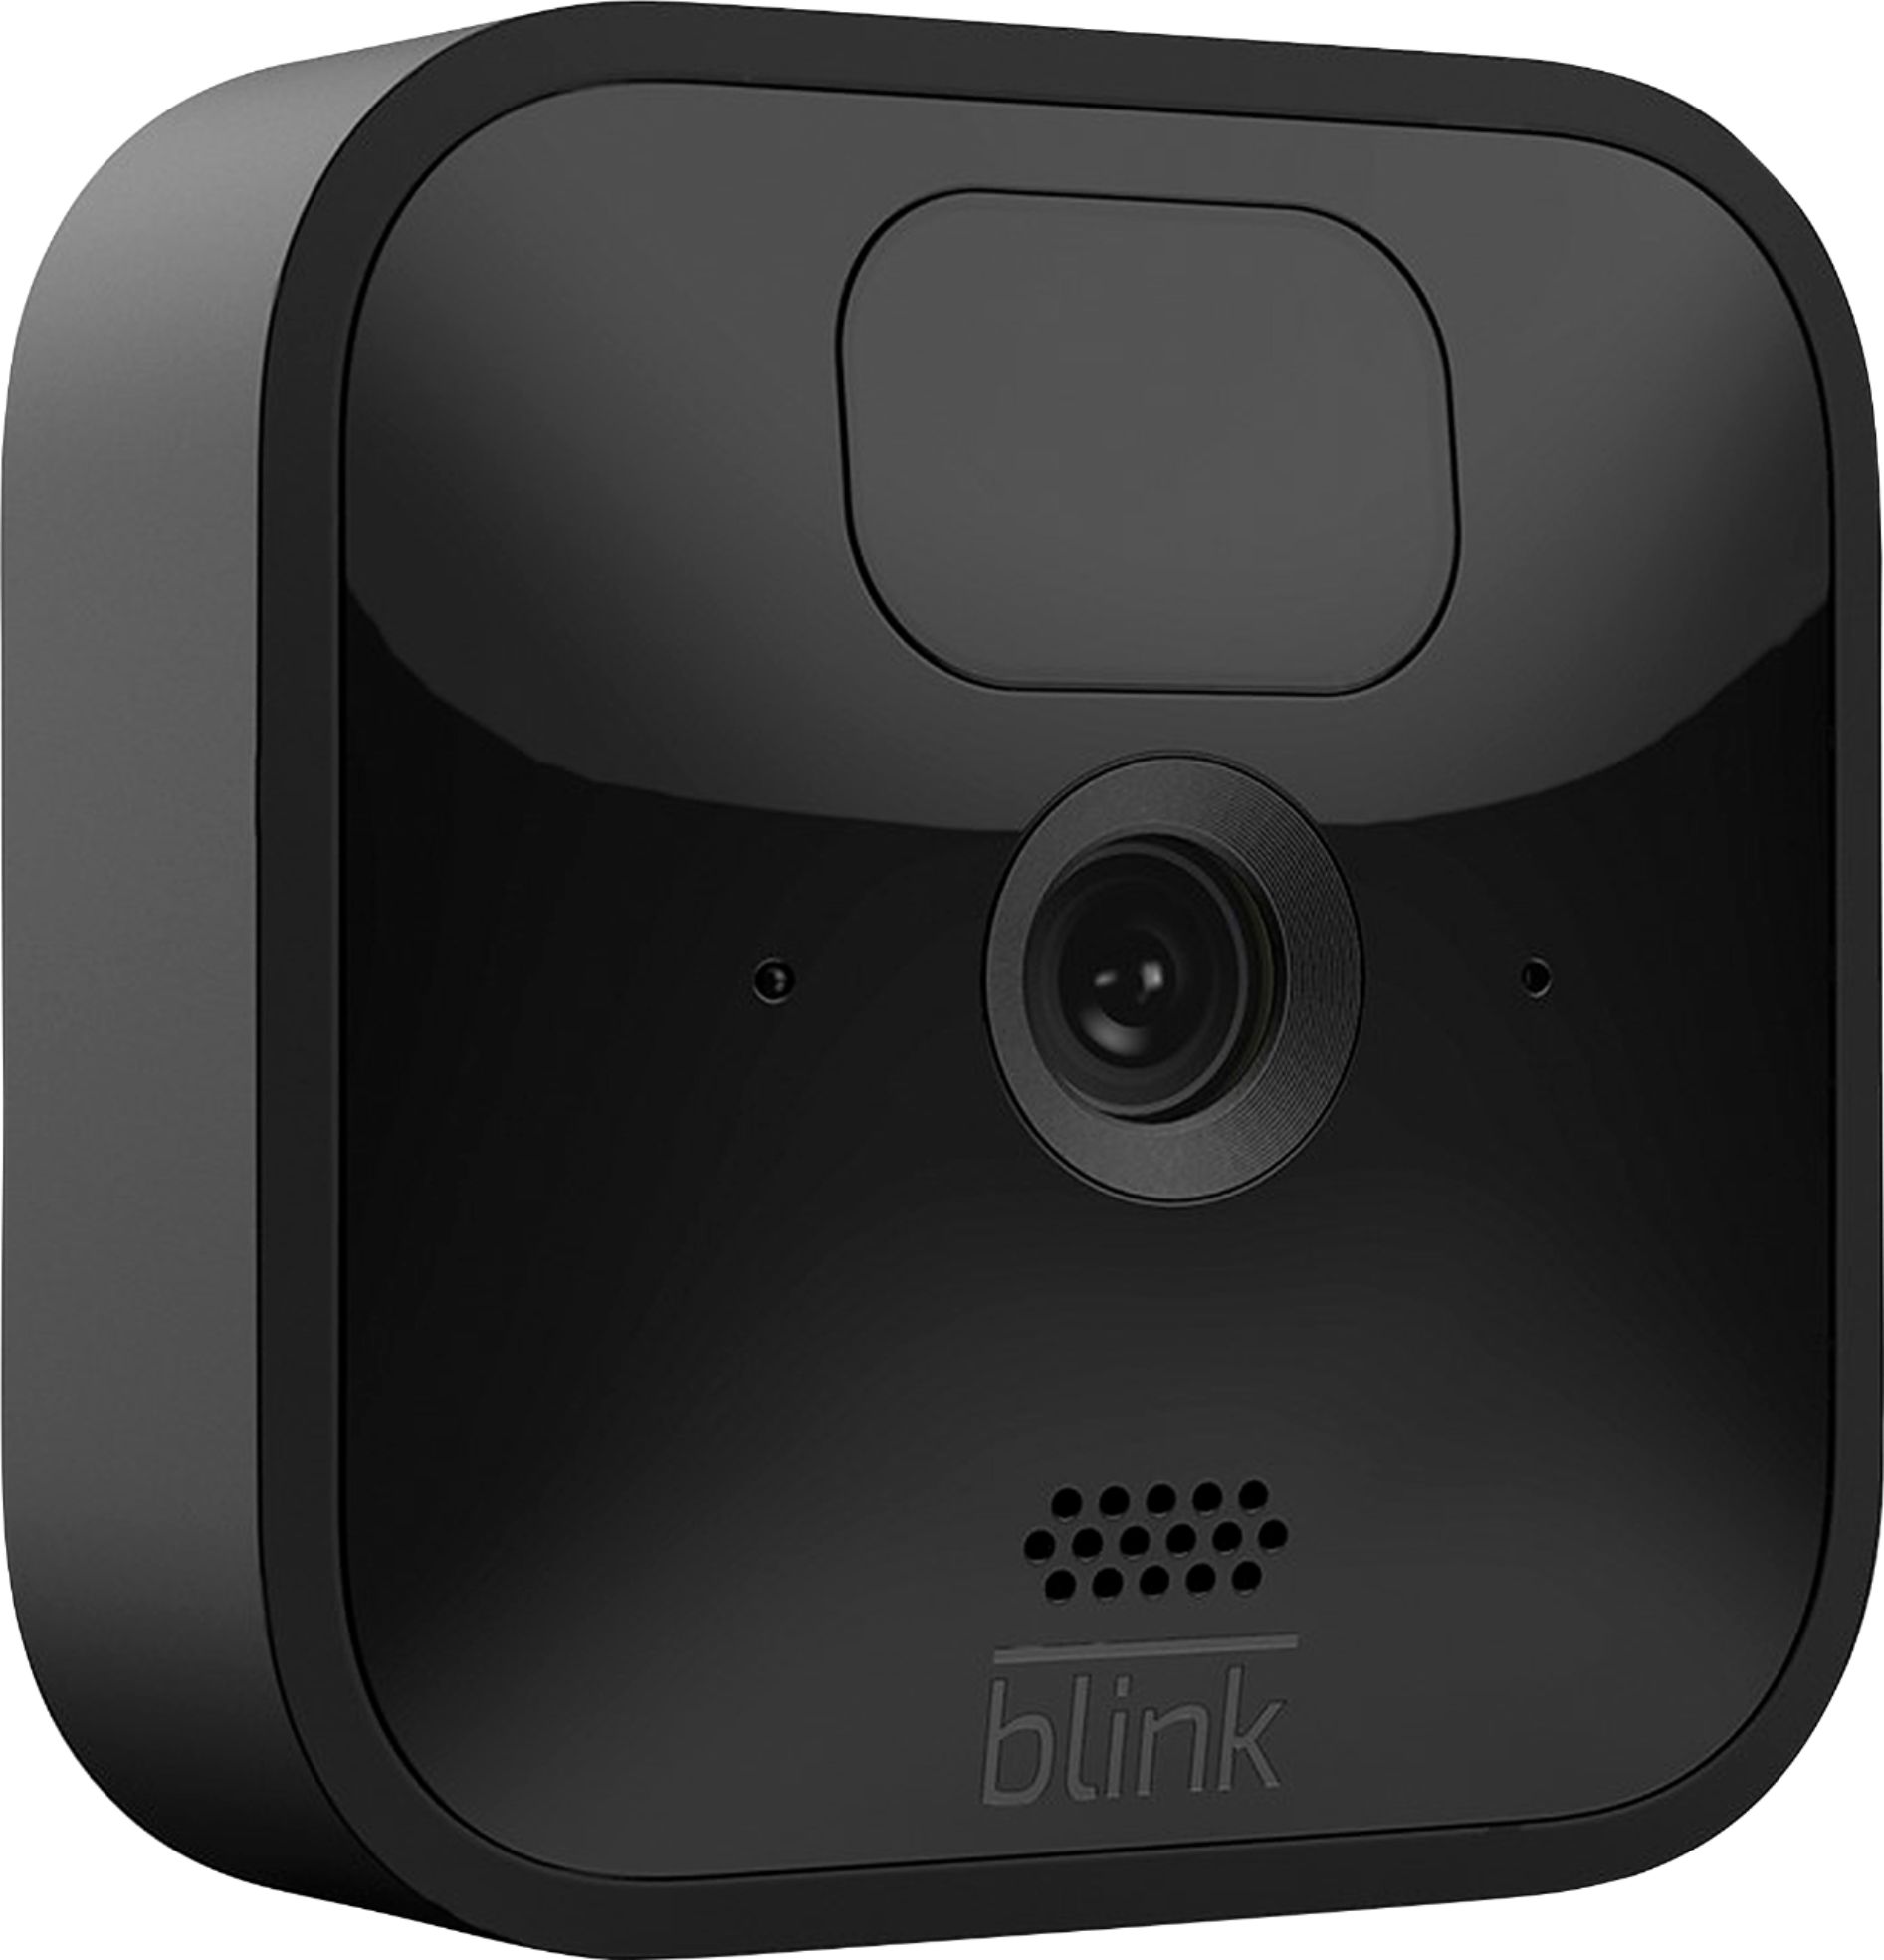 Blink Outdoor (3rd Gen) Review